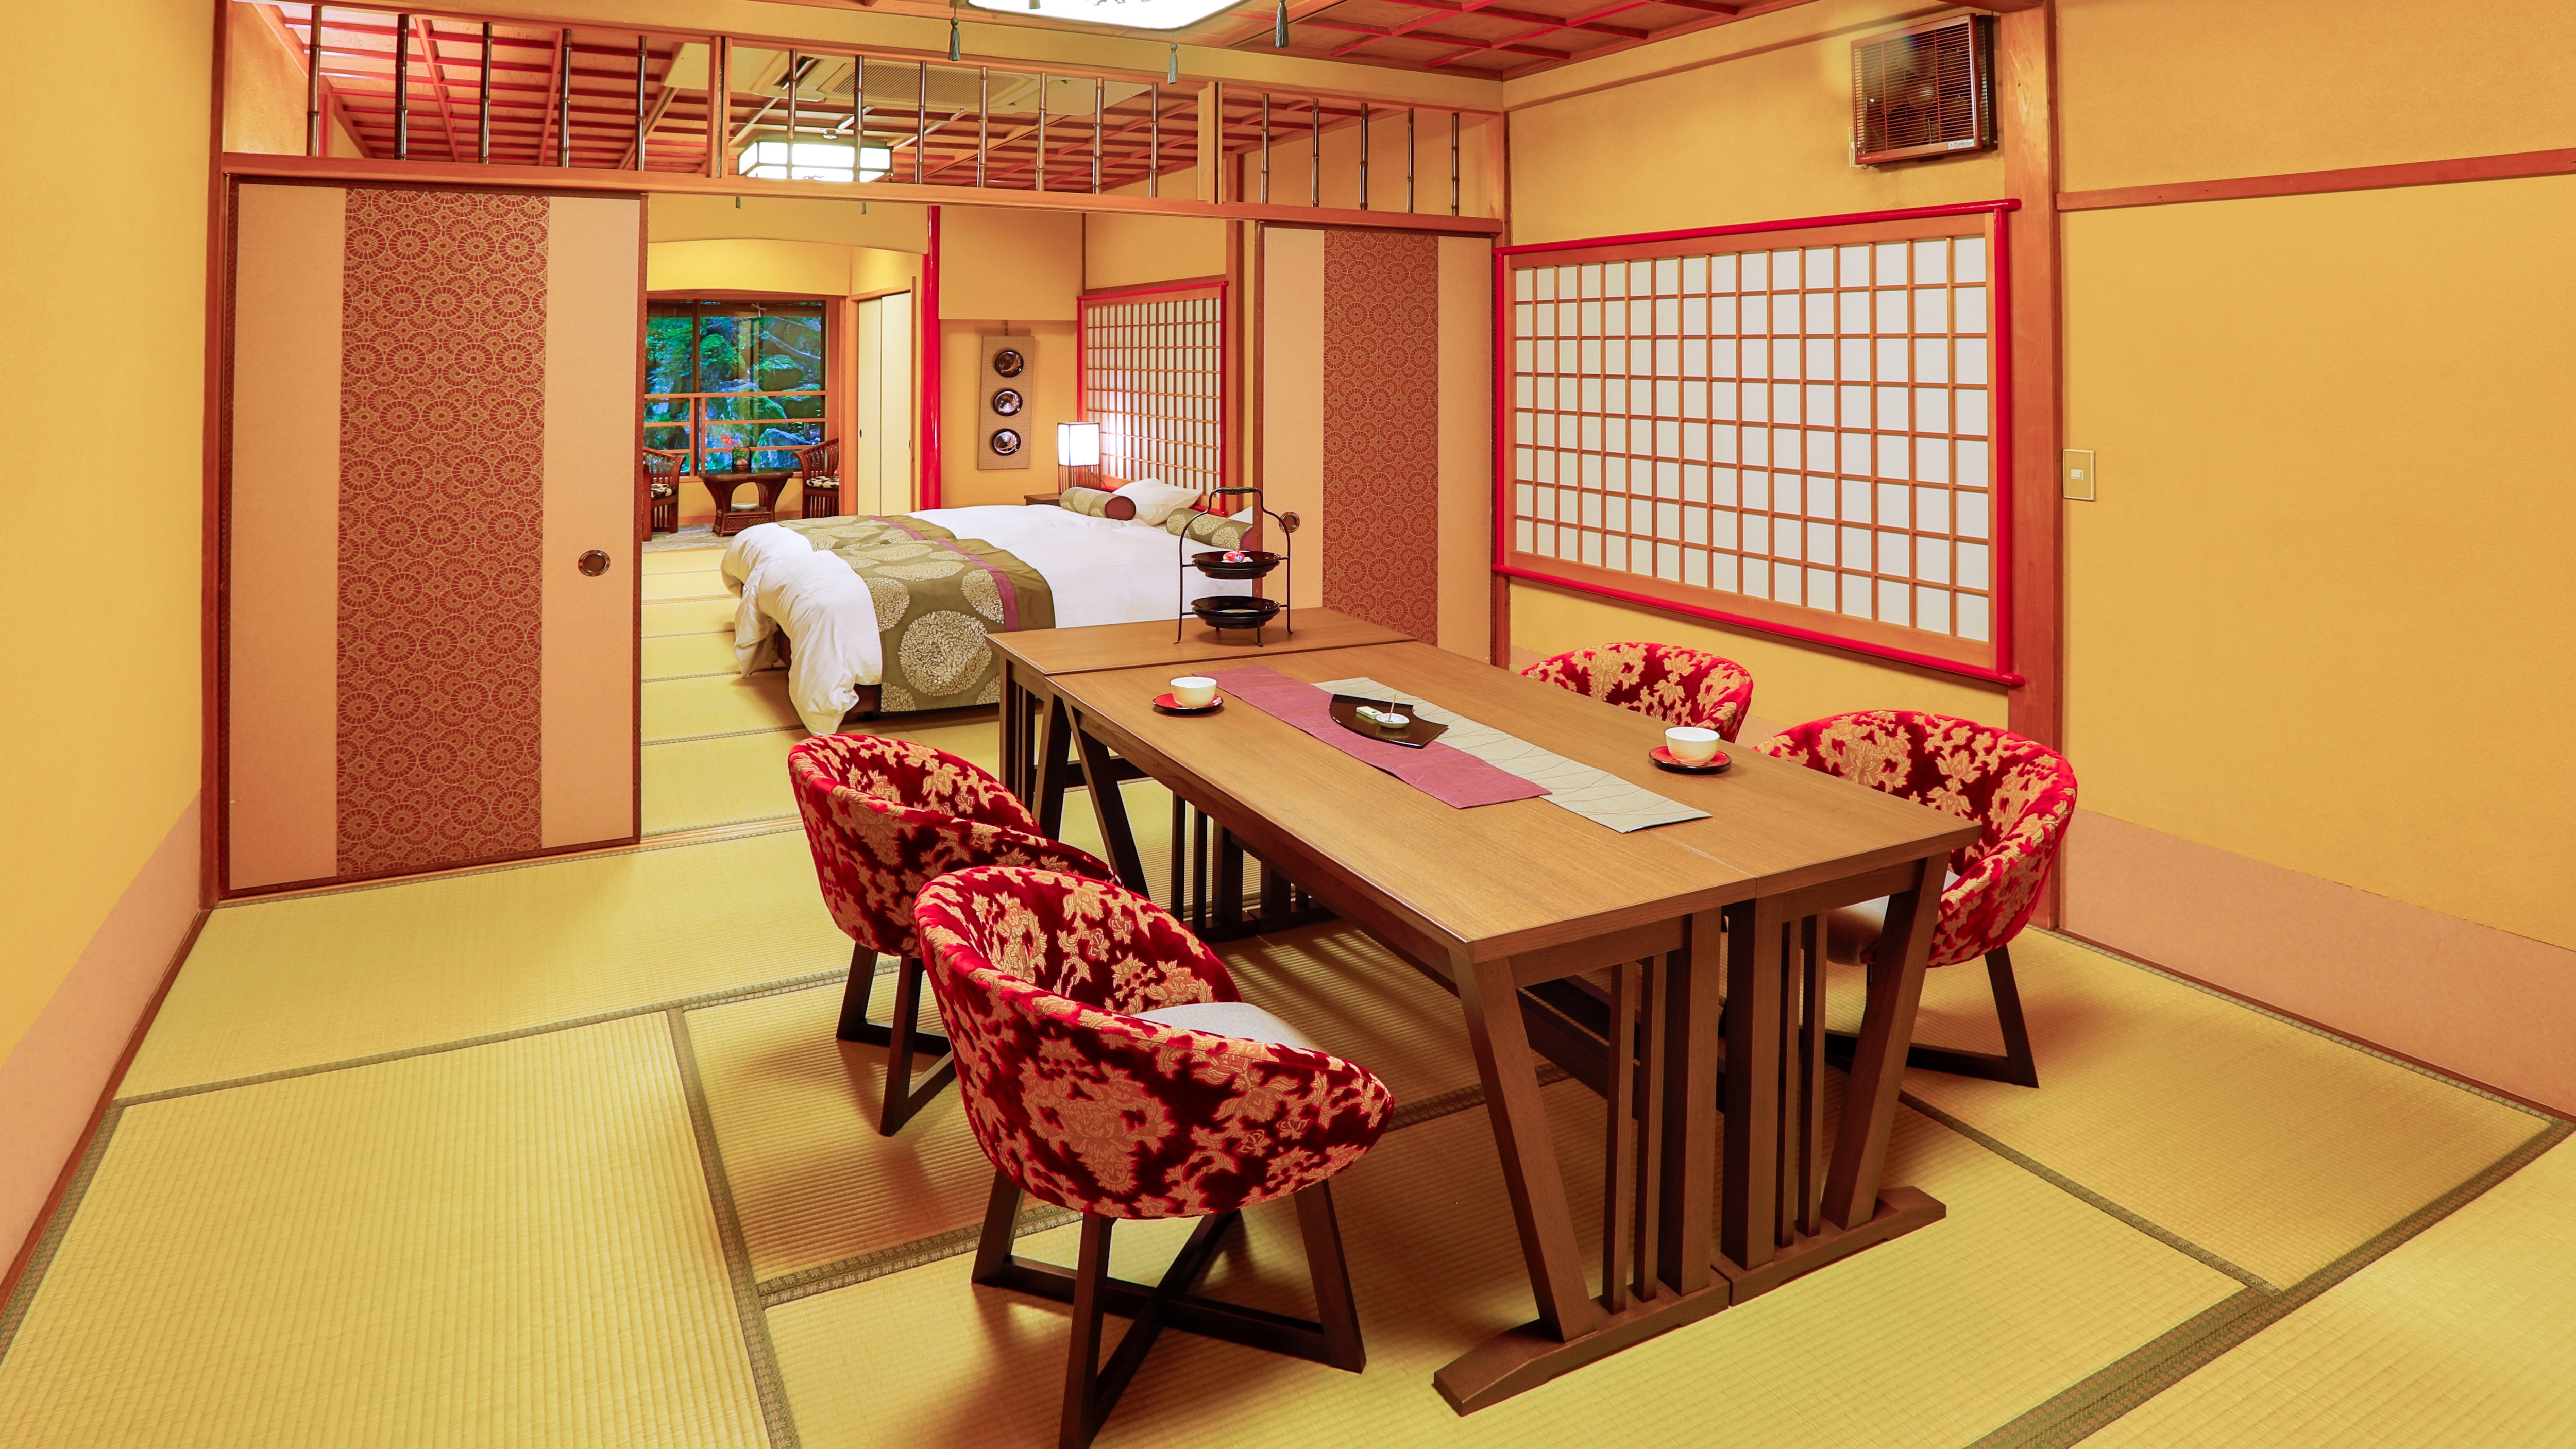 客房【睡蓮】餐廳和臥室有23張榻榻米的特別房間